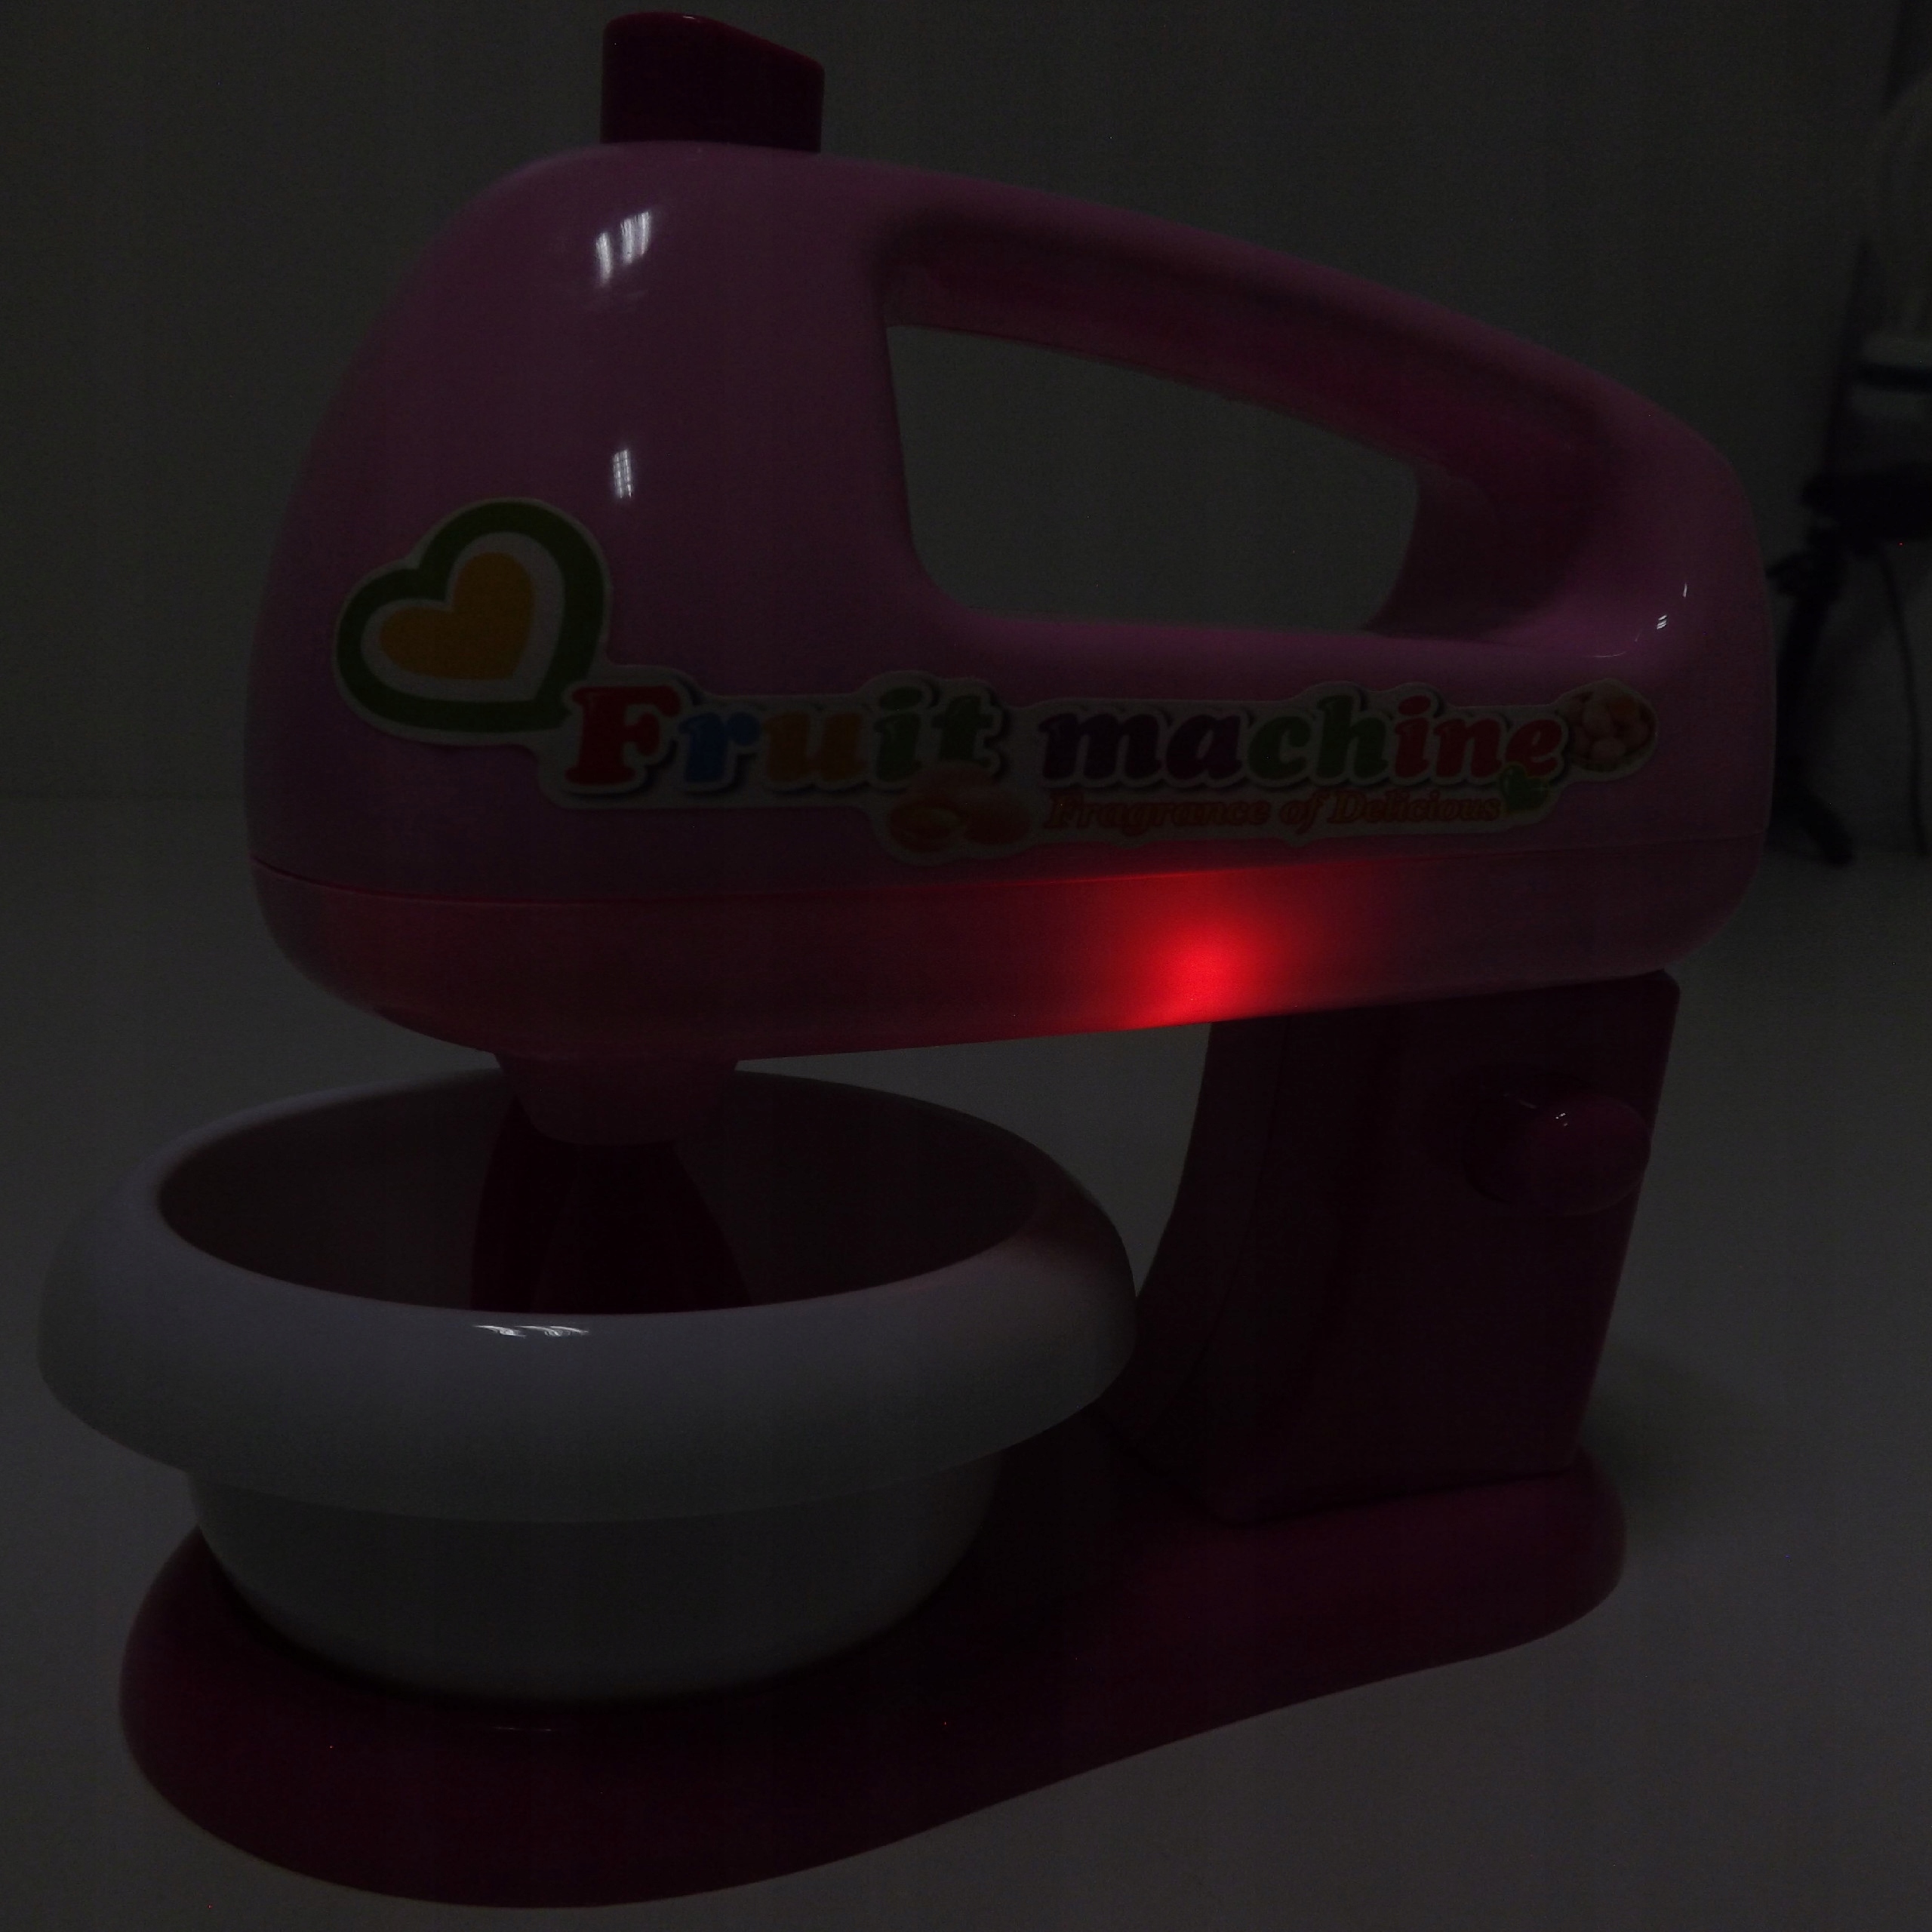 Mikser robot kuchenny dla dzieci miska AGD G19 Waga produktu z opakowaniem jednostkowym 0.44 kg